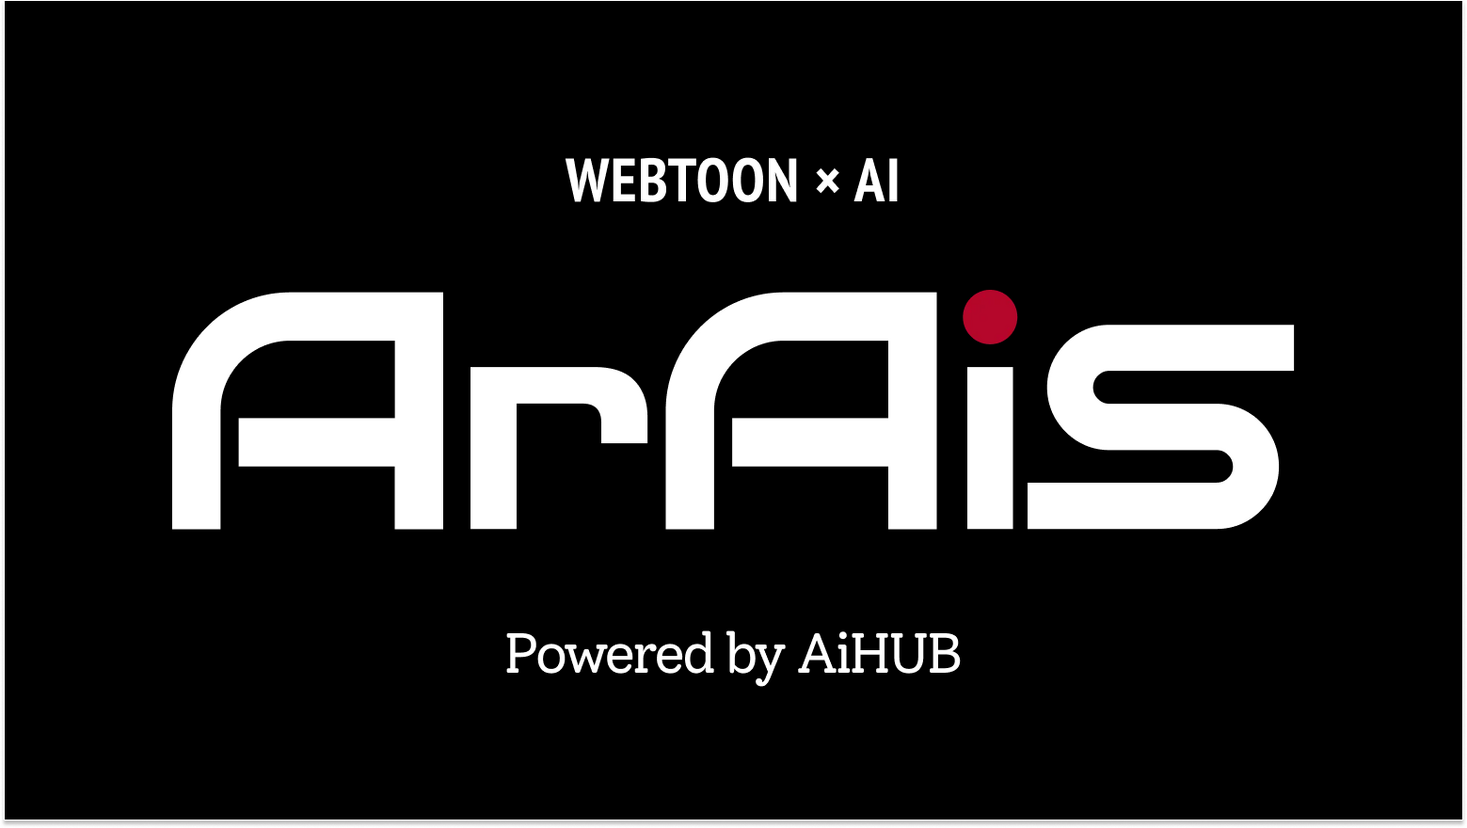 AIHUB株式会社が、生成AI技術を駆使したWebtoonの制作を開始しました。